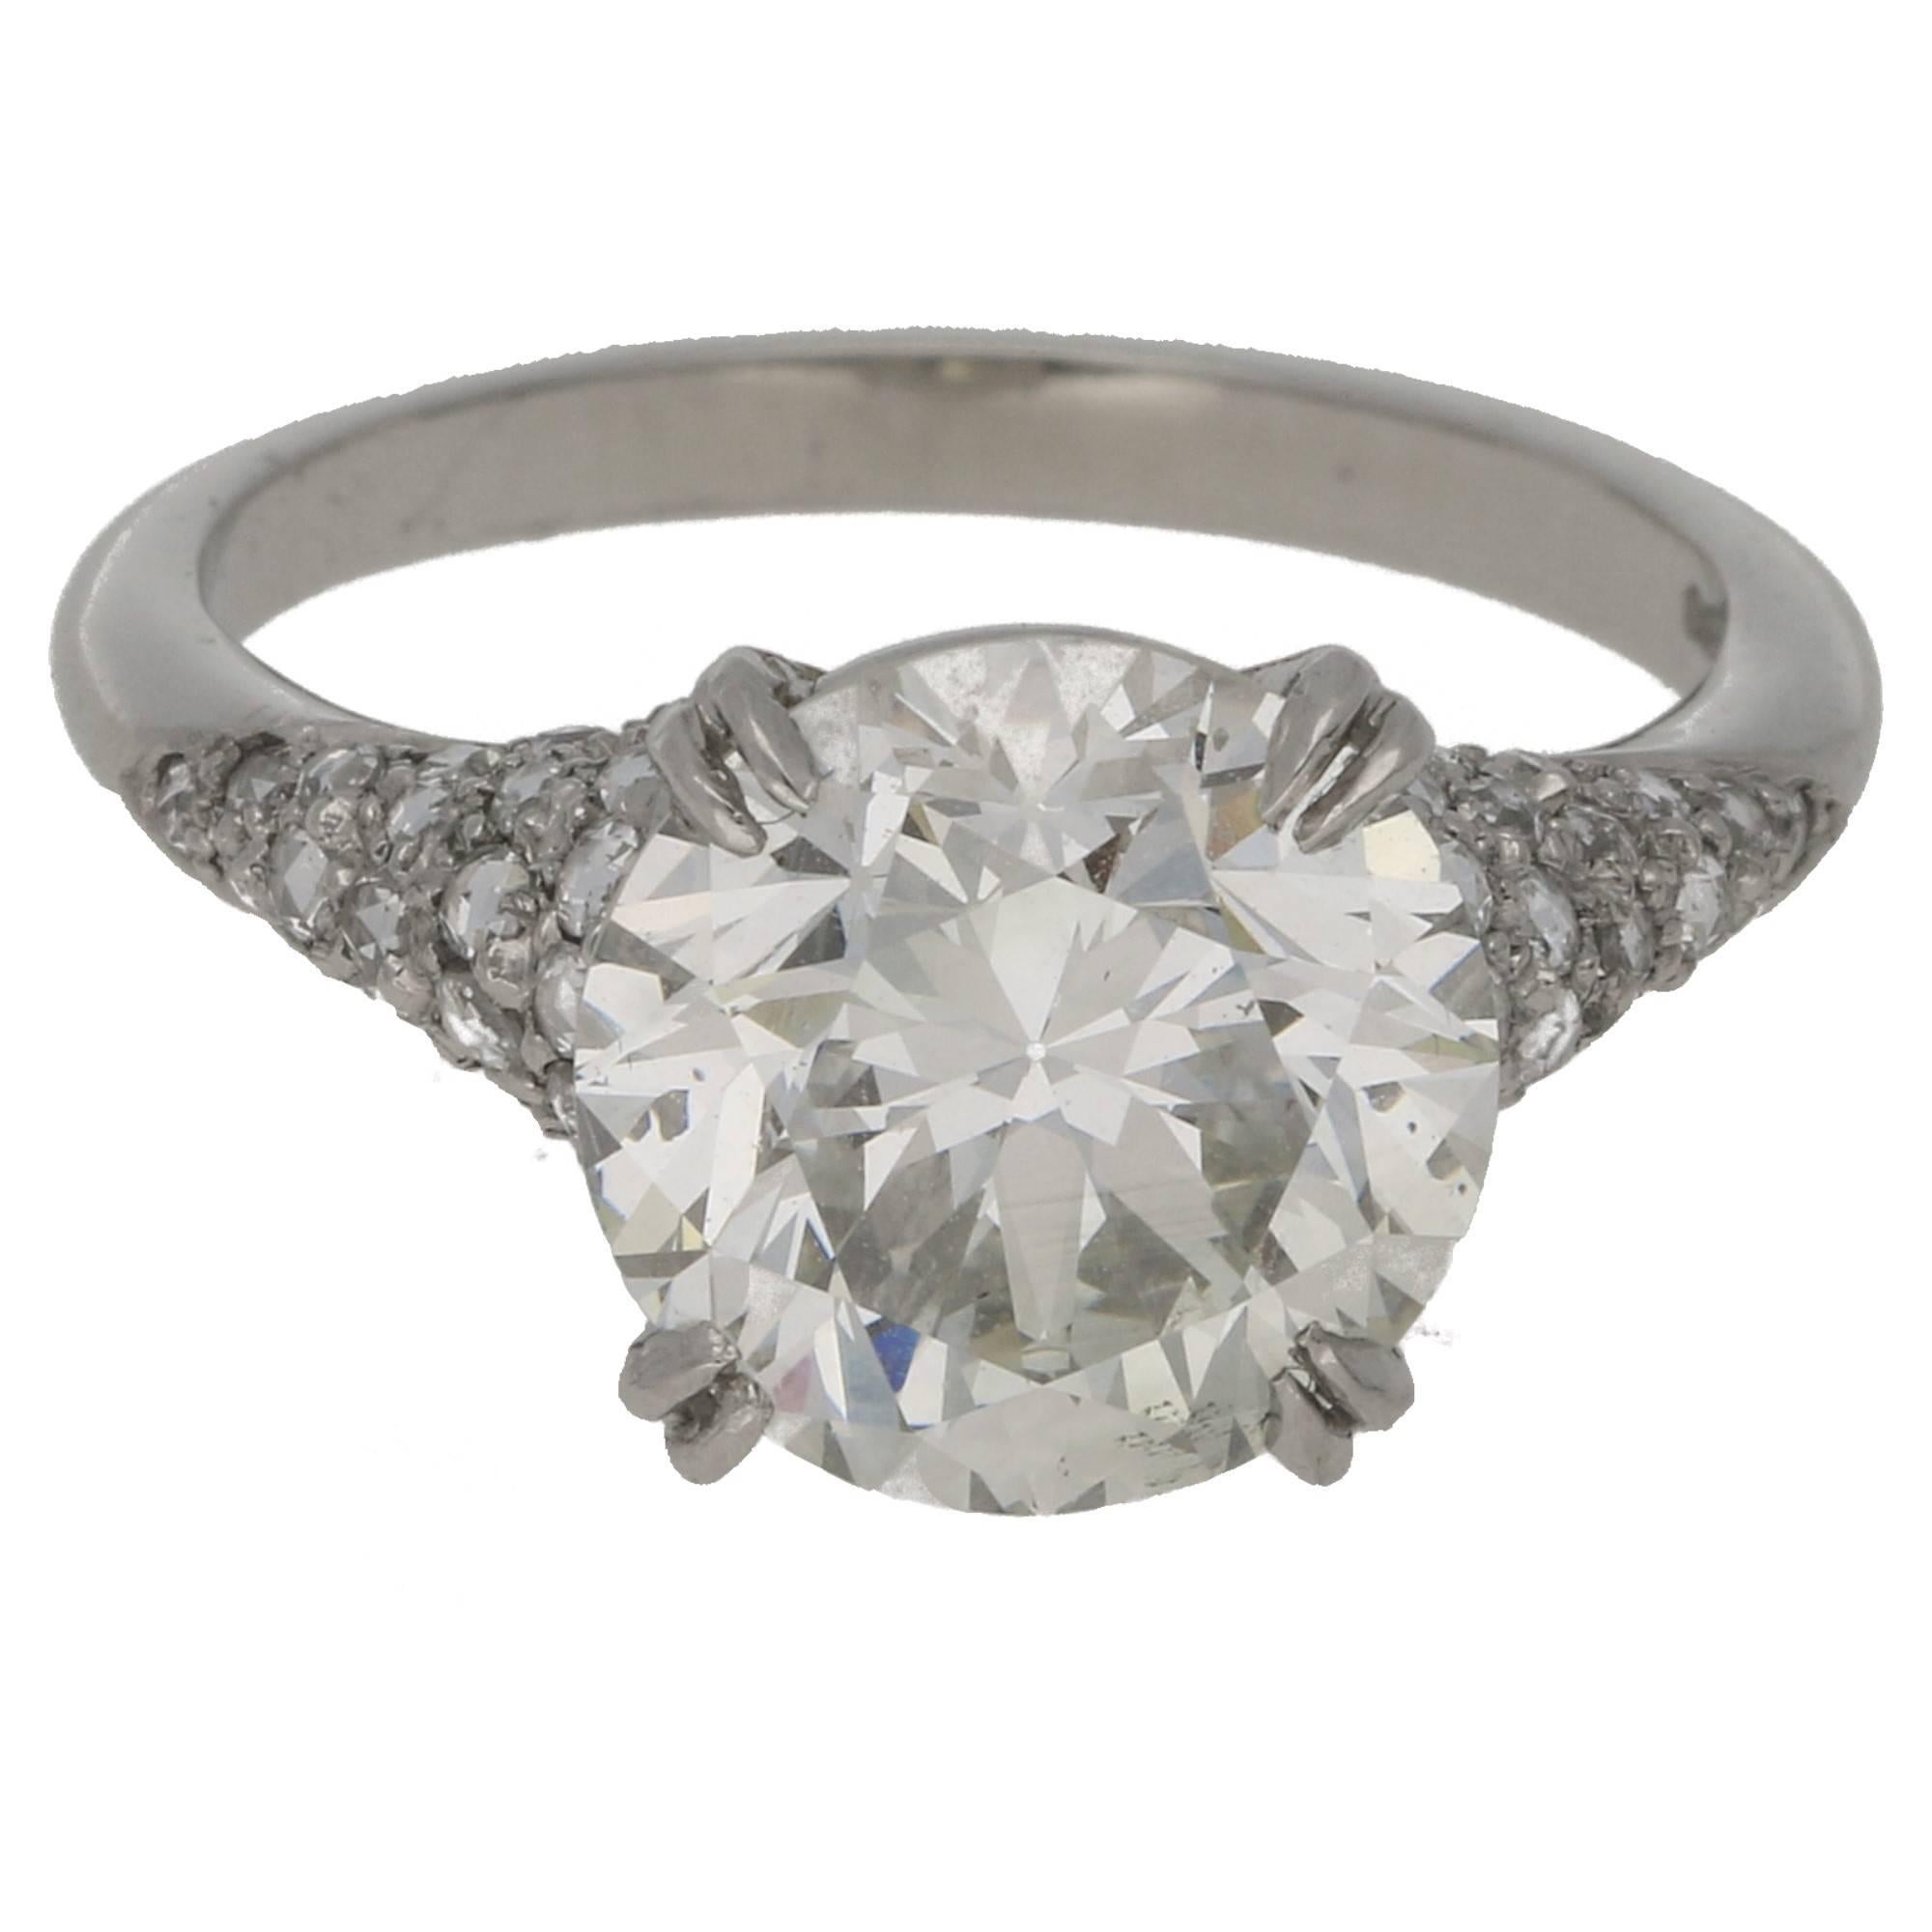 4.28 Carat European Cut Diamond Platinum Engagement Ring